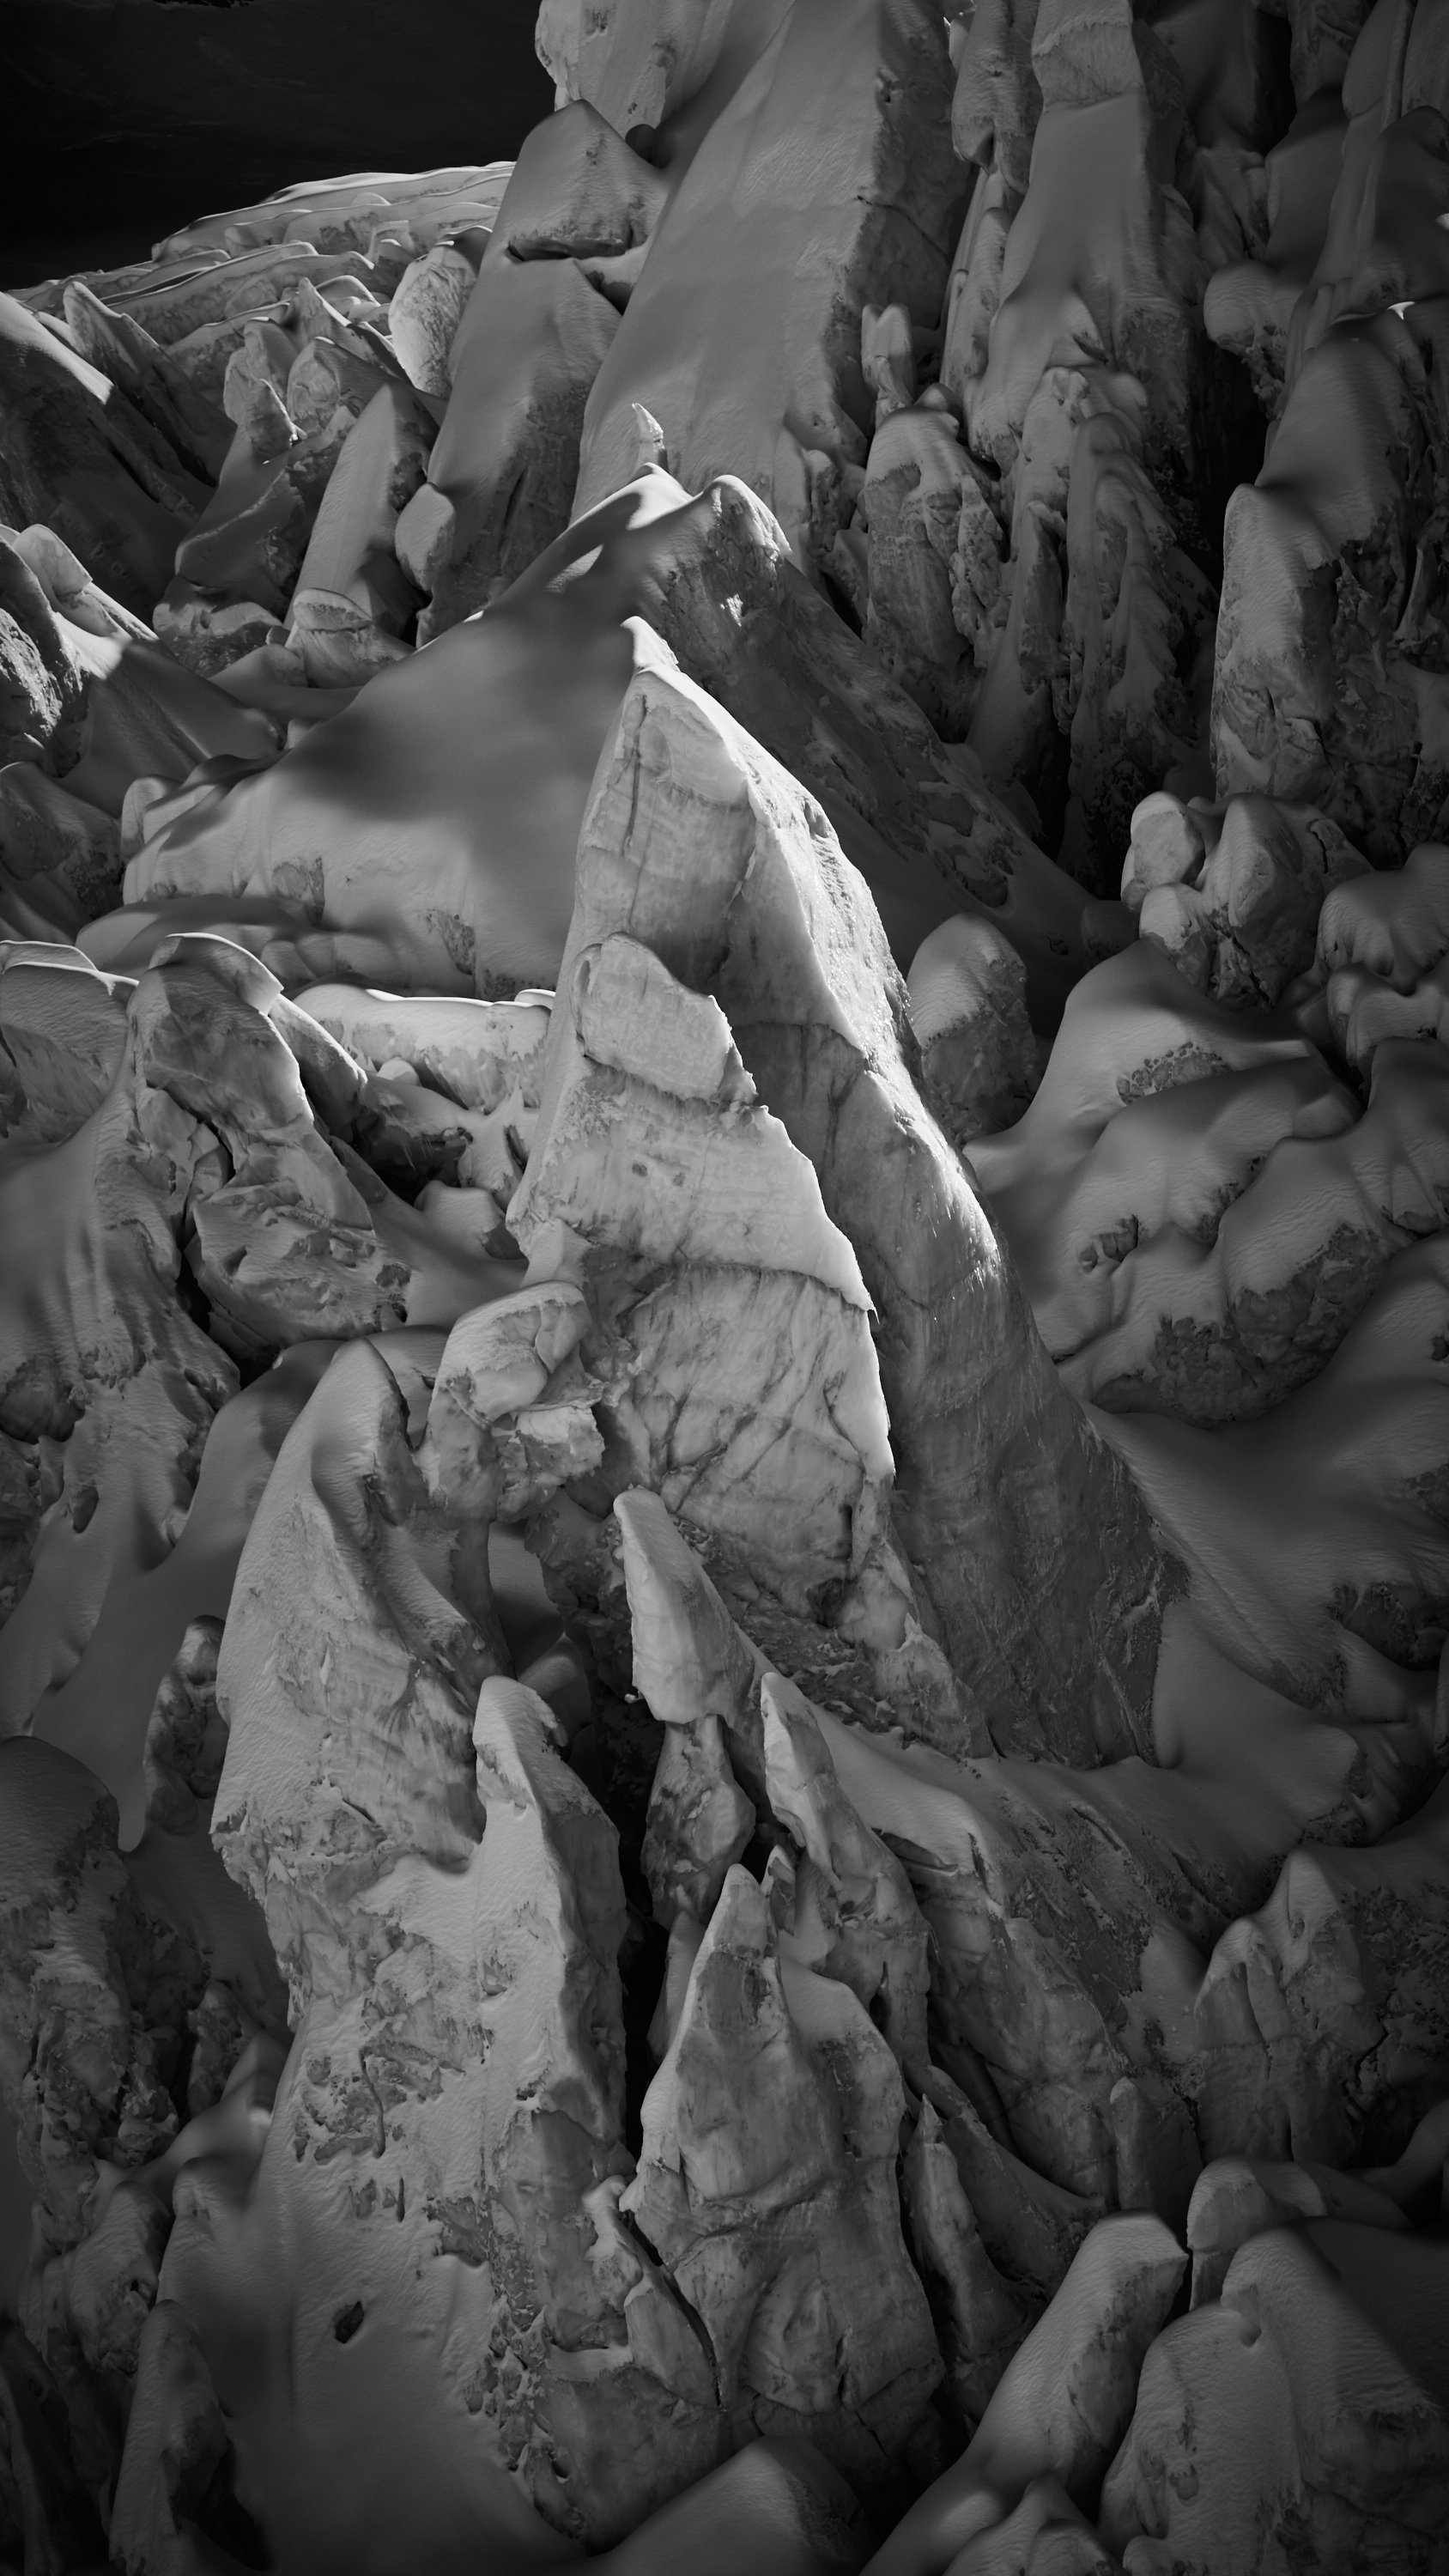 Engadin, Bernina, Tschierva & Rosegg Gletschereisskulpturen, fotografiert vom Schweizer Fine art Fotografen Jürg Kaufmann während der zahlreichen Expeditionen auf den Gletschern in den Schweizer Alpen.